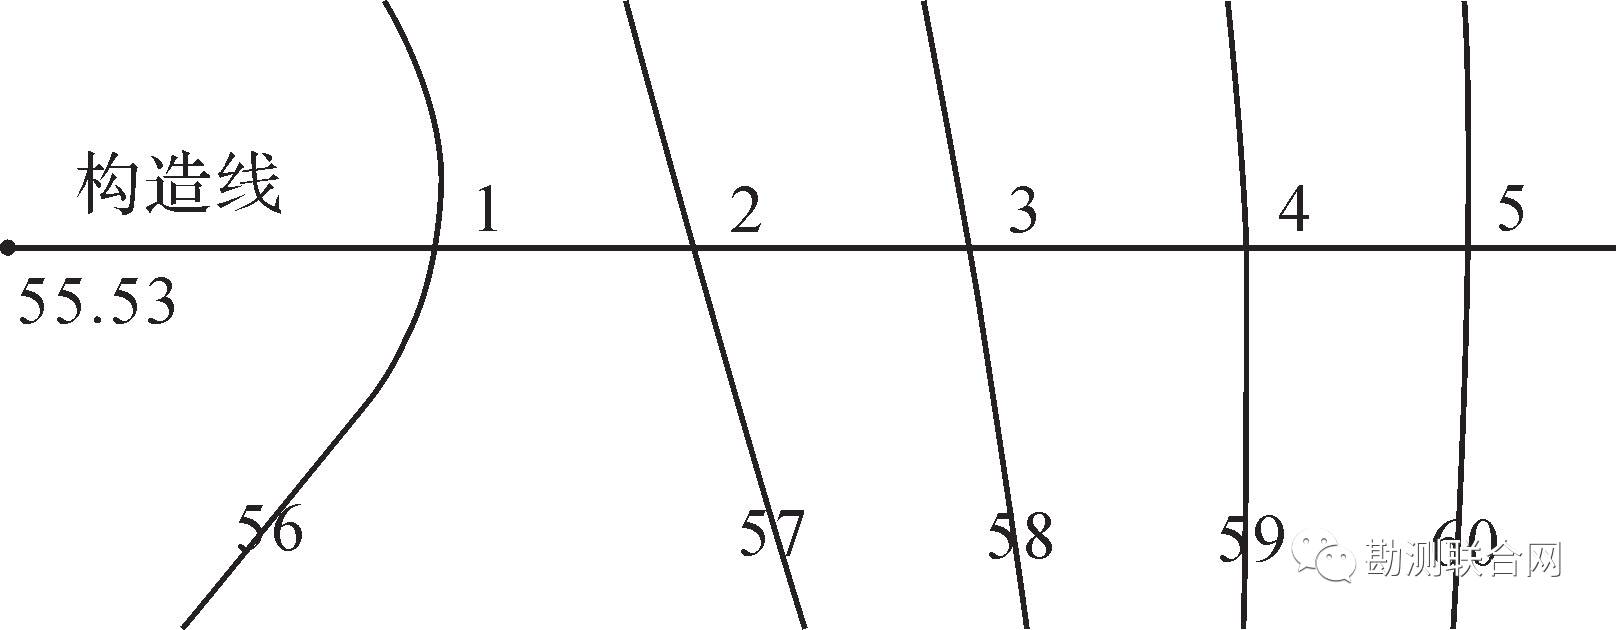 相交后,即可获得各交点的坐标,据此可计算出各相交点与此高程点的距离